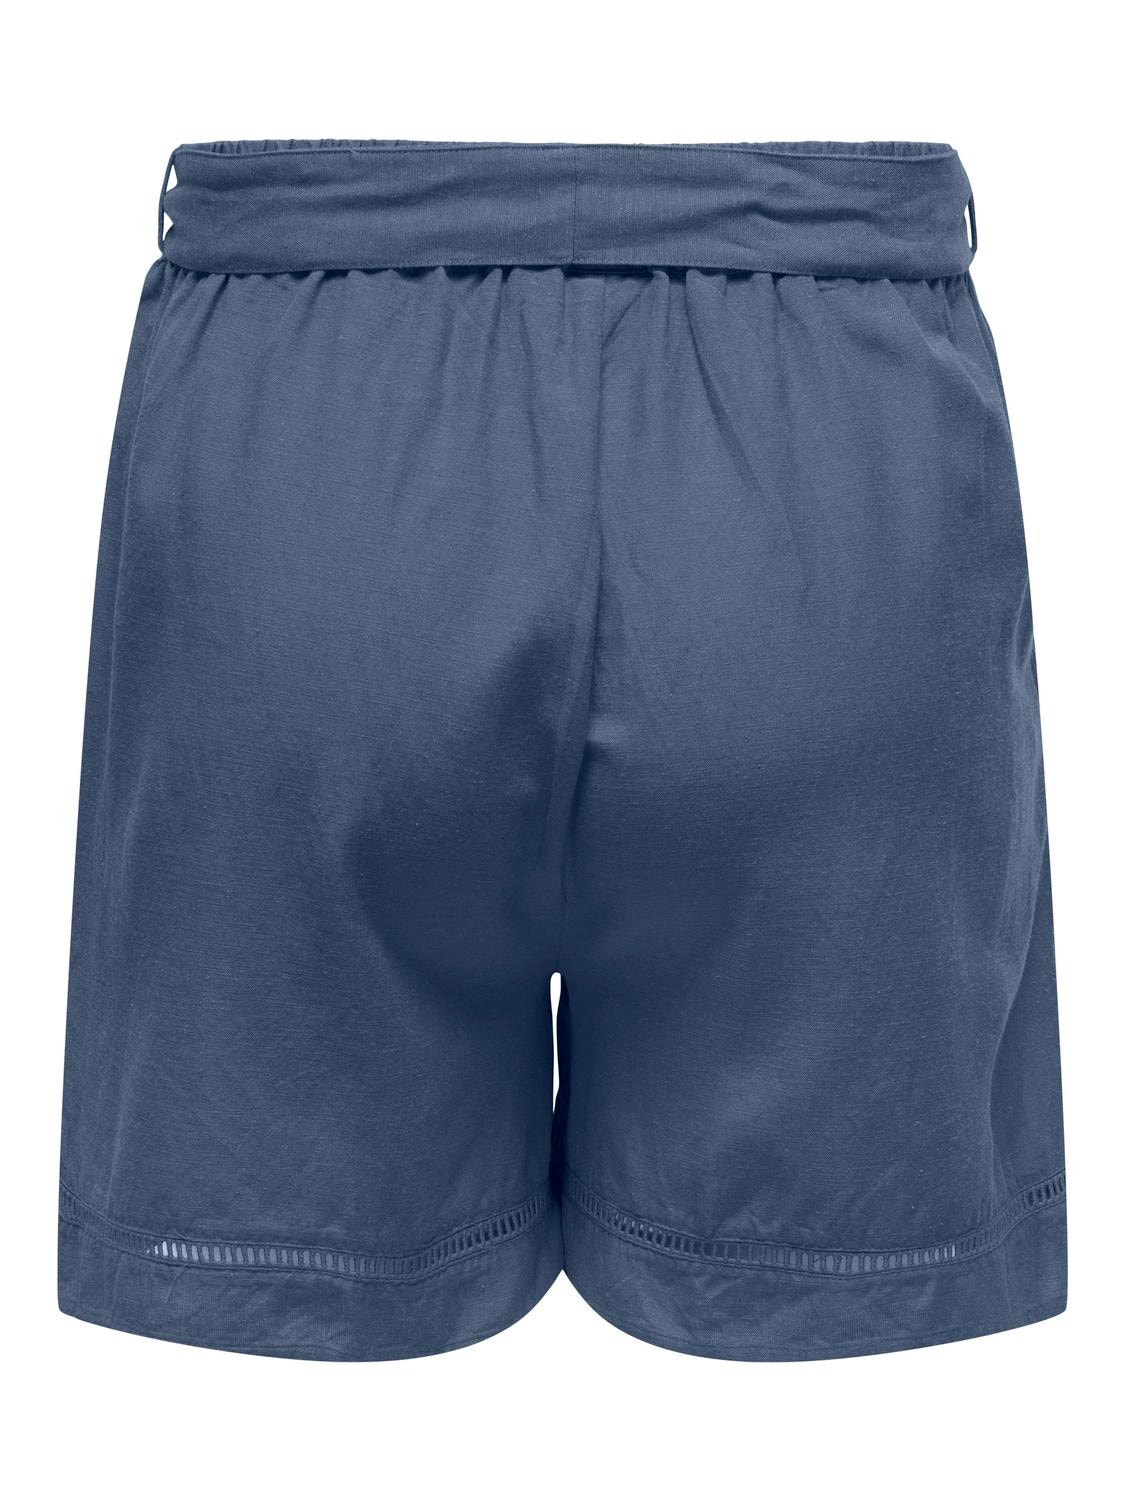 ONLY Loose fit Middels høy midje Shorts -Vintage Indigo - 15320532